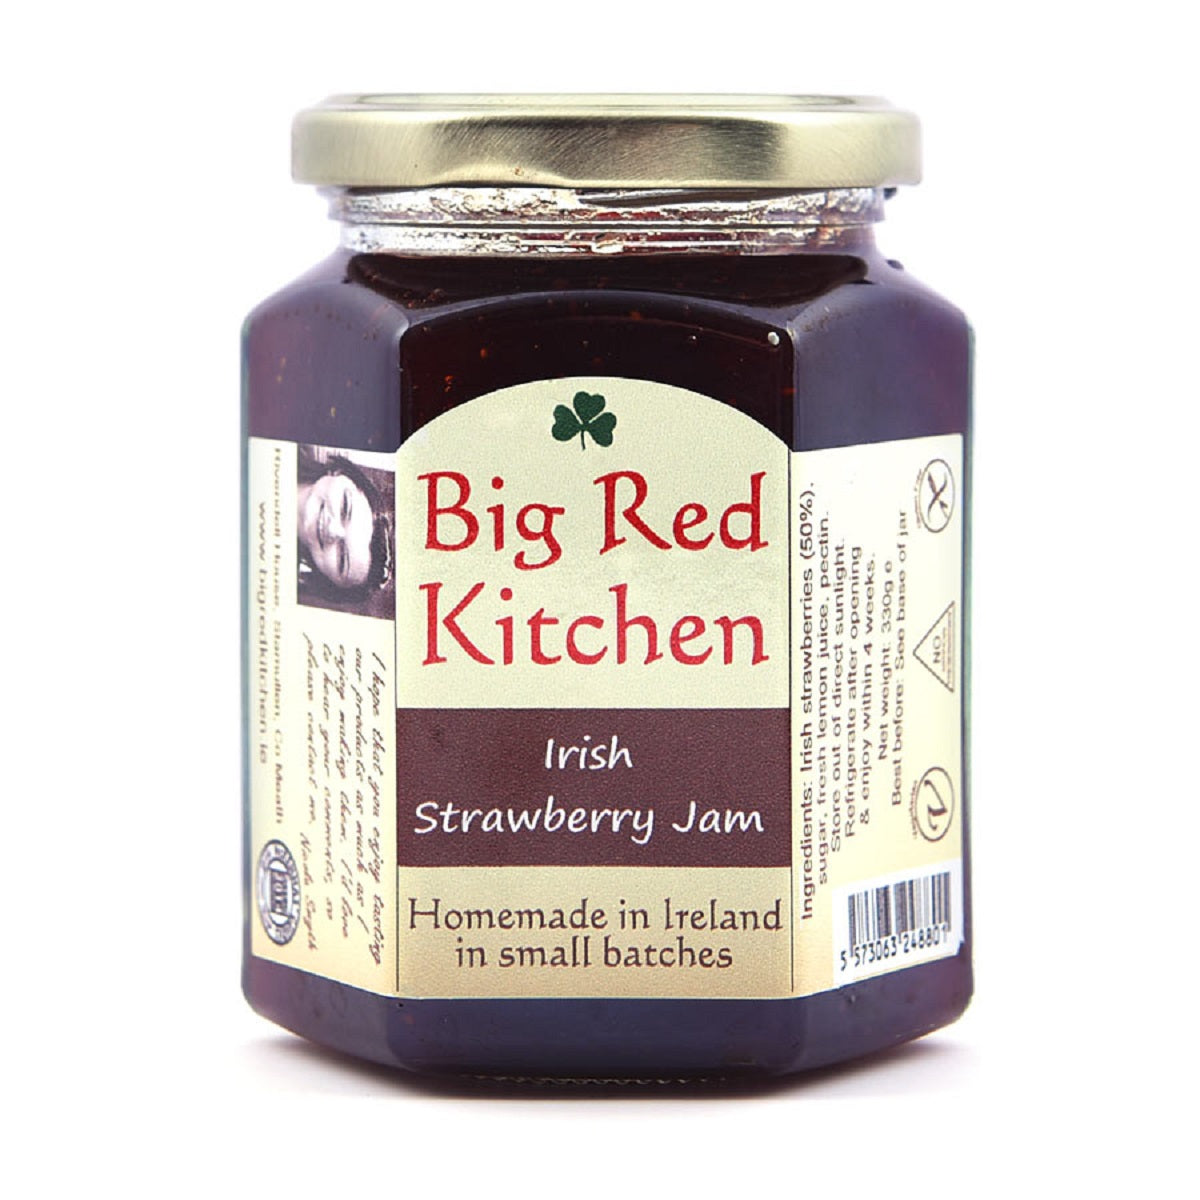 Big Red Kitchen Irish Strawberry Jam 330g